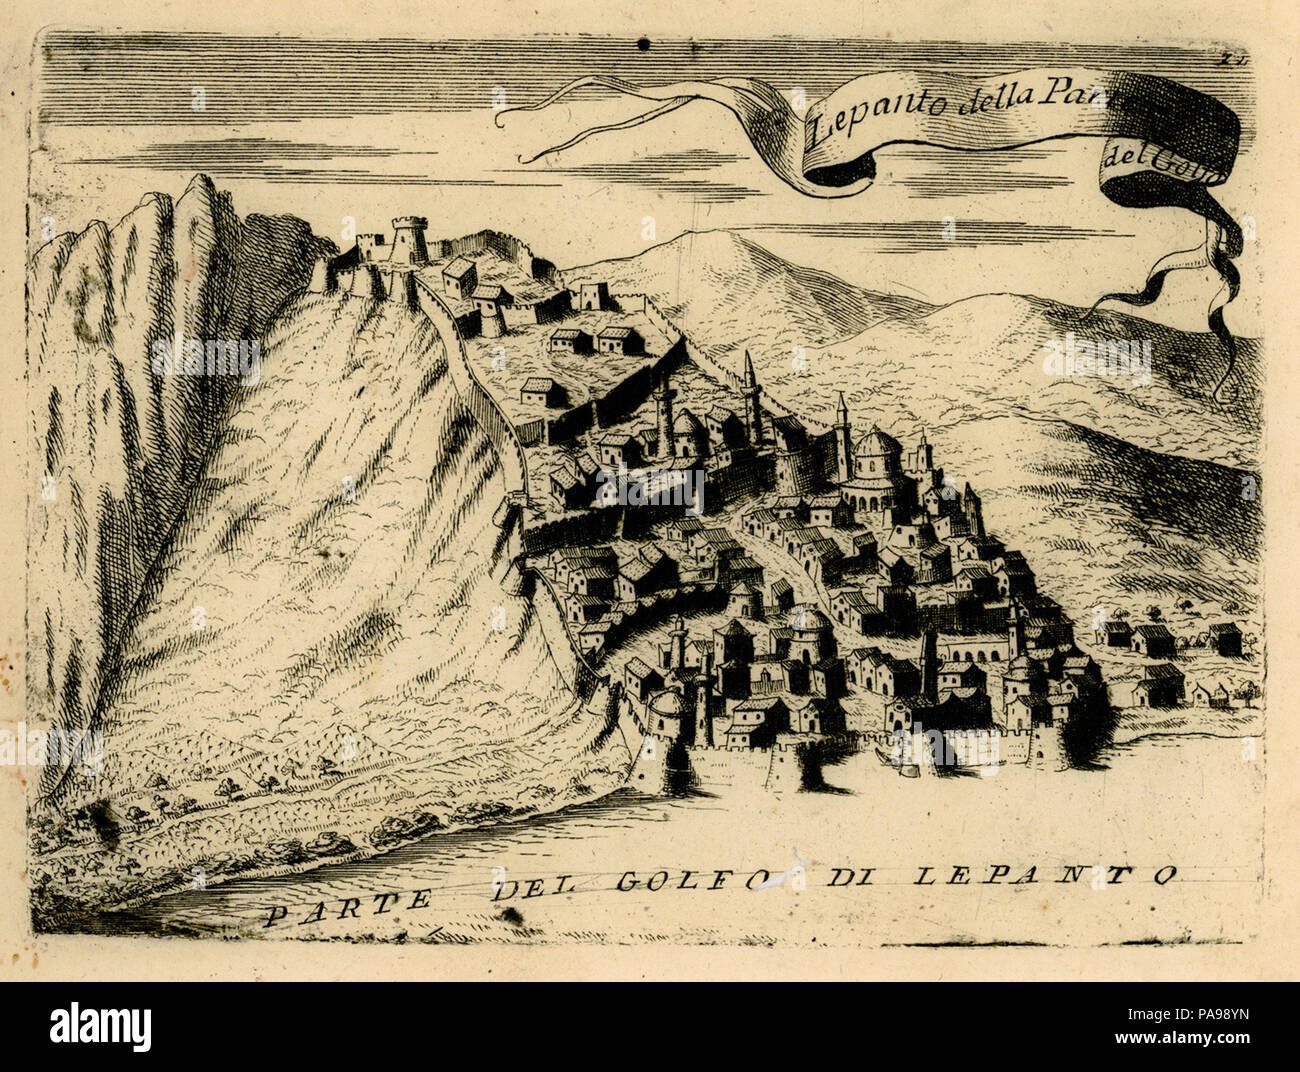 157 Lepanto della parte del Golfo - Coronelli Vincenzo - 1688 Stock Photo